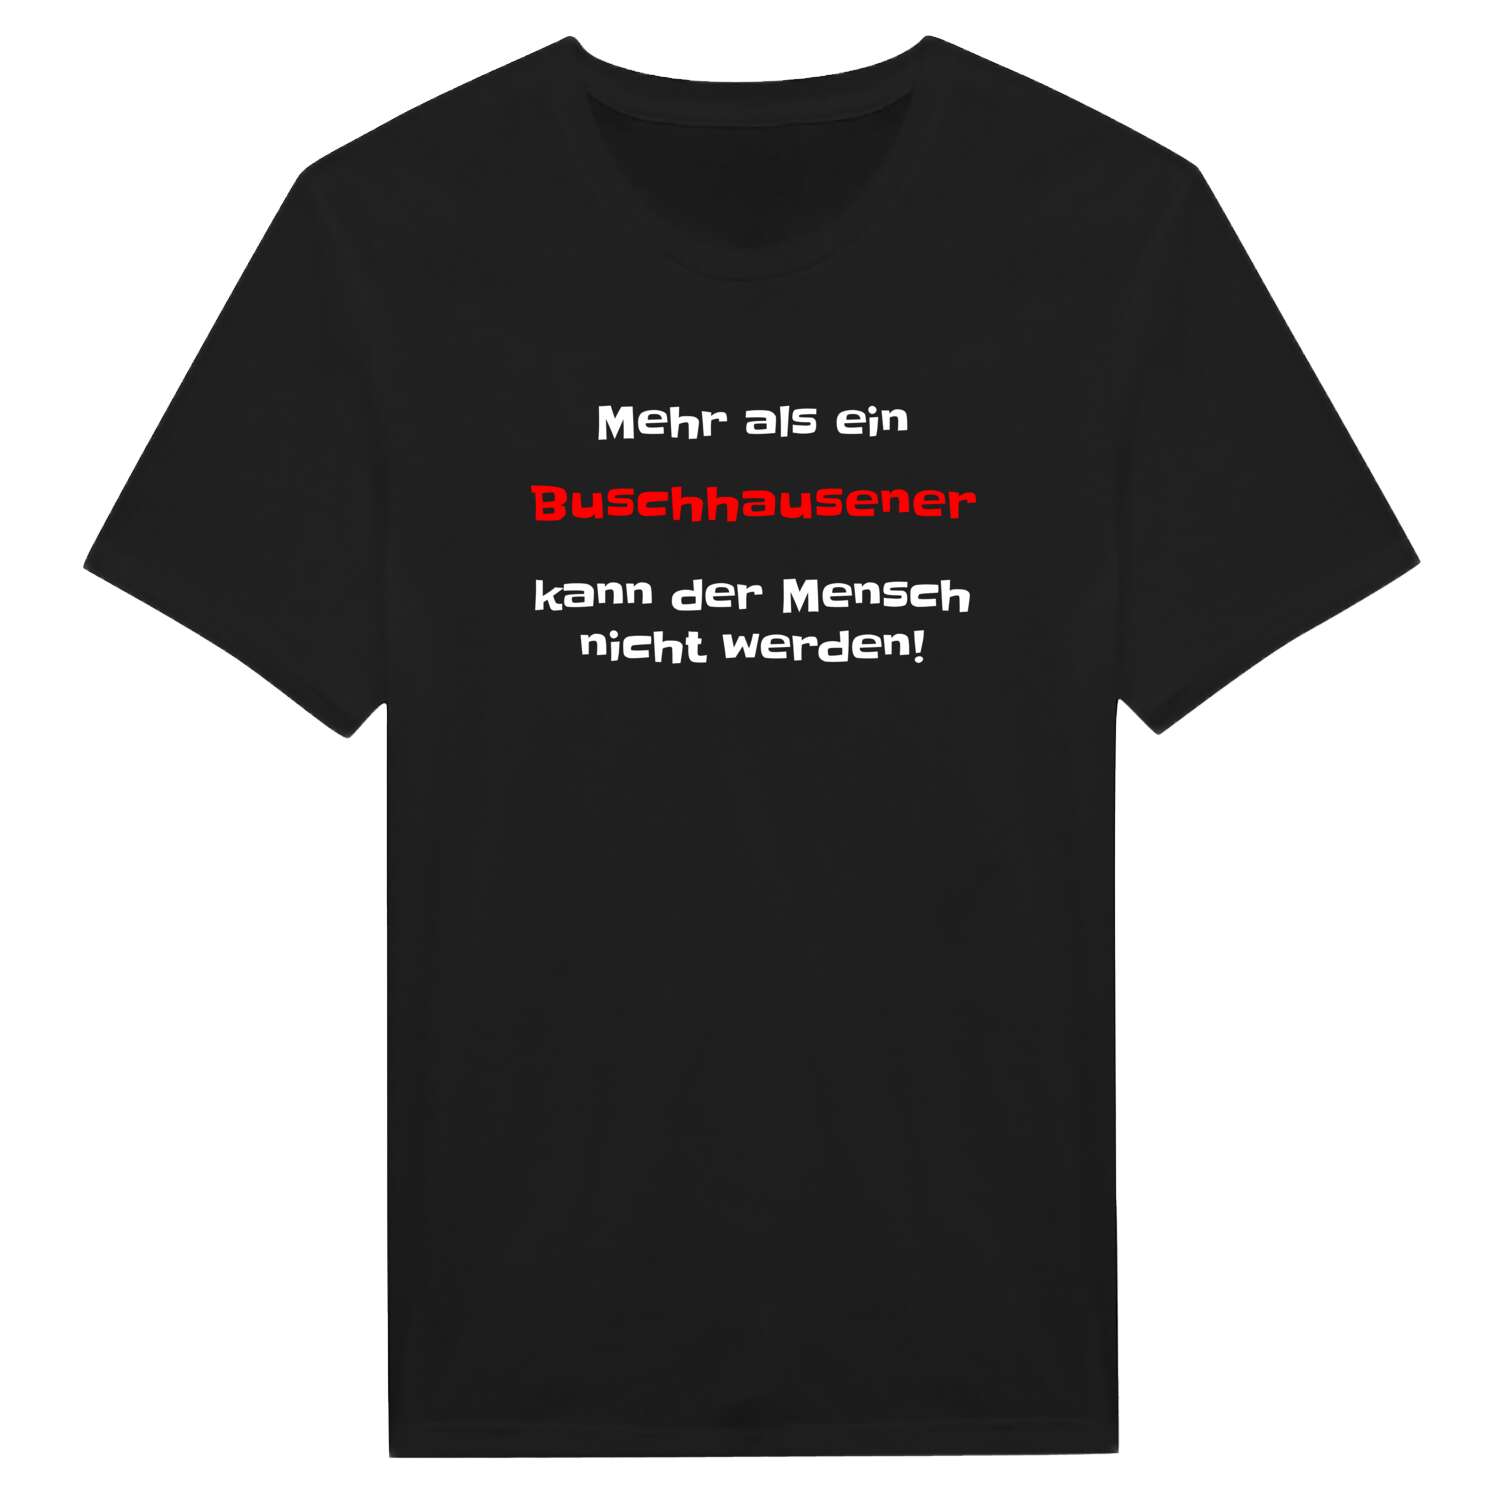 Buschhausen T-Shirt »Mehr als ein«